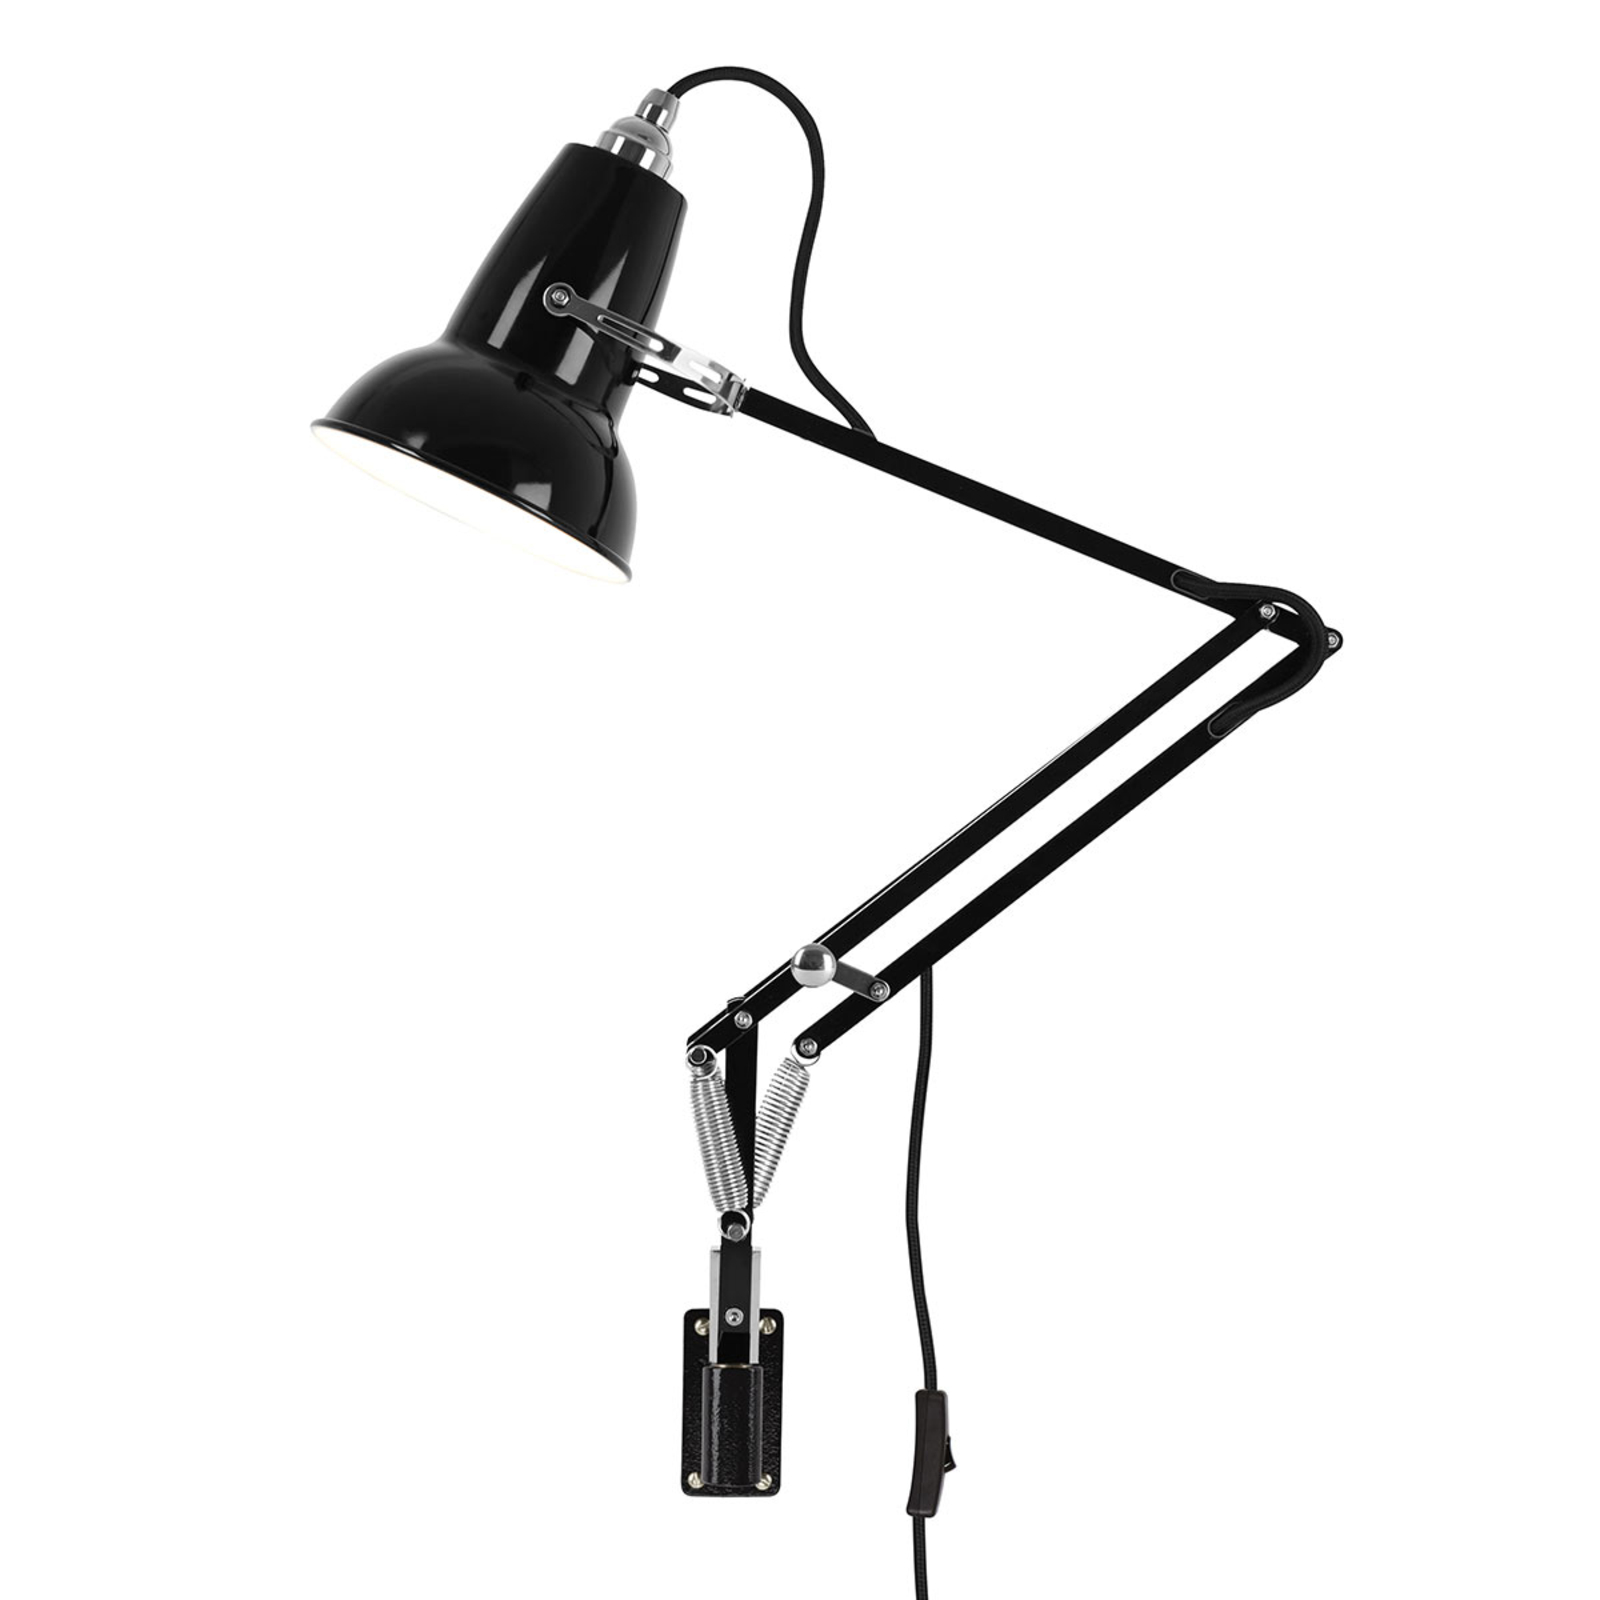 De vreemdeling Voorstel Rimpelingen Anglepoise® Original 1227 Mini scharnier wandlamp | Lampen24.nl